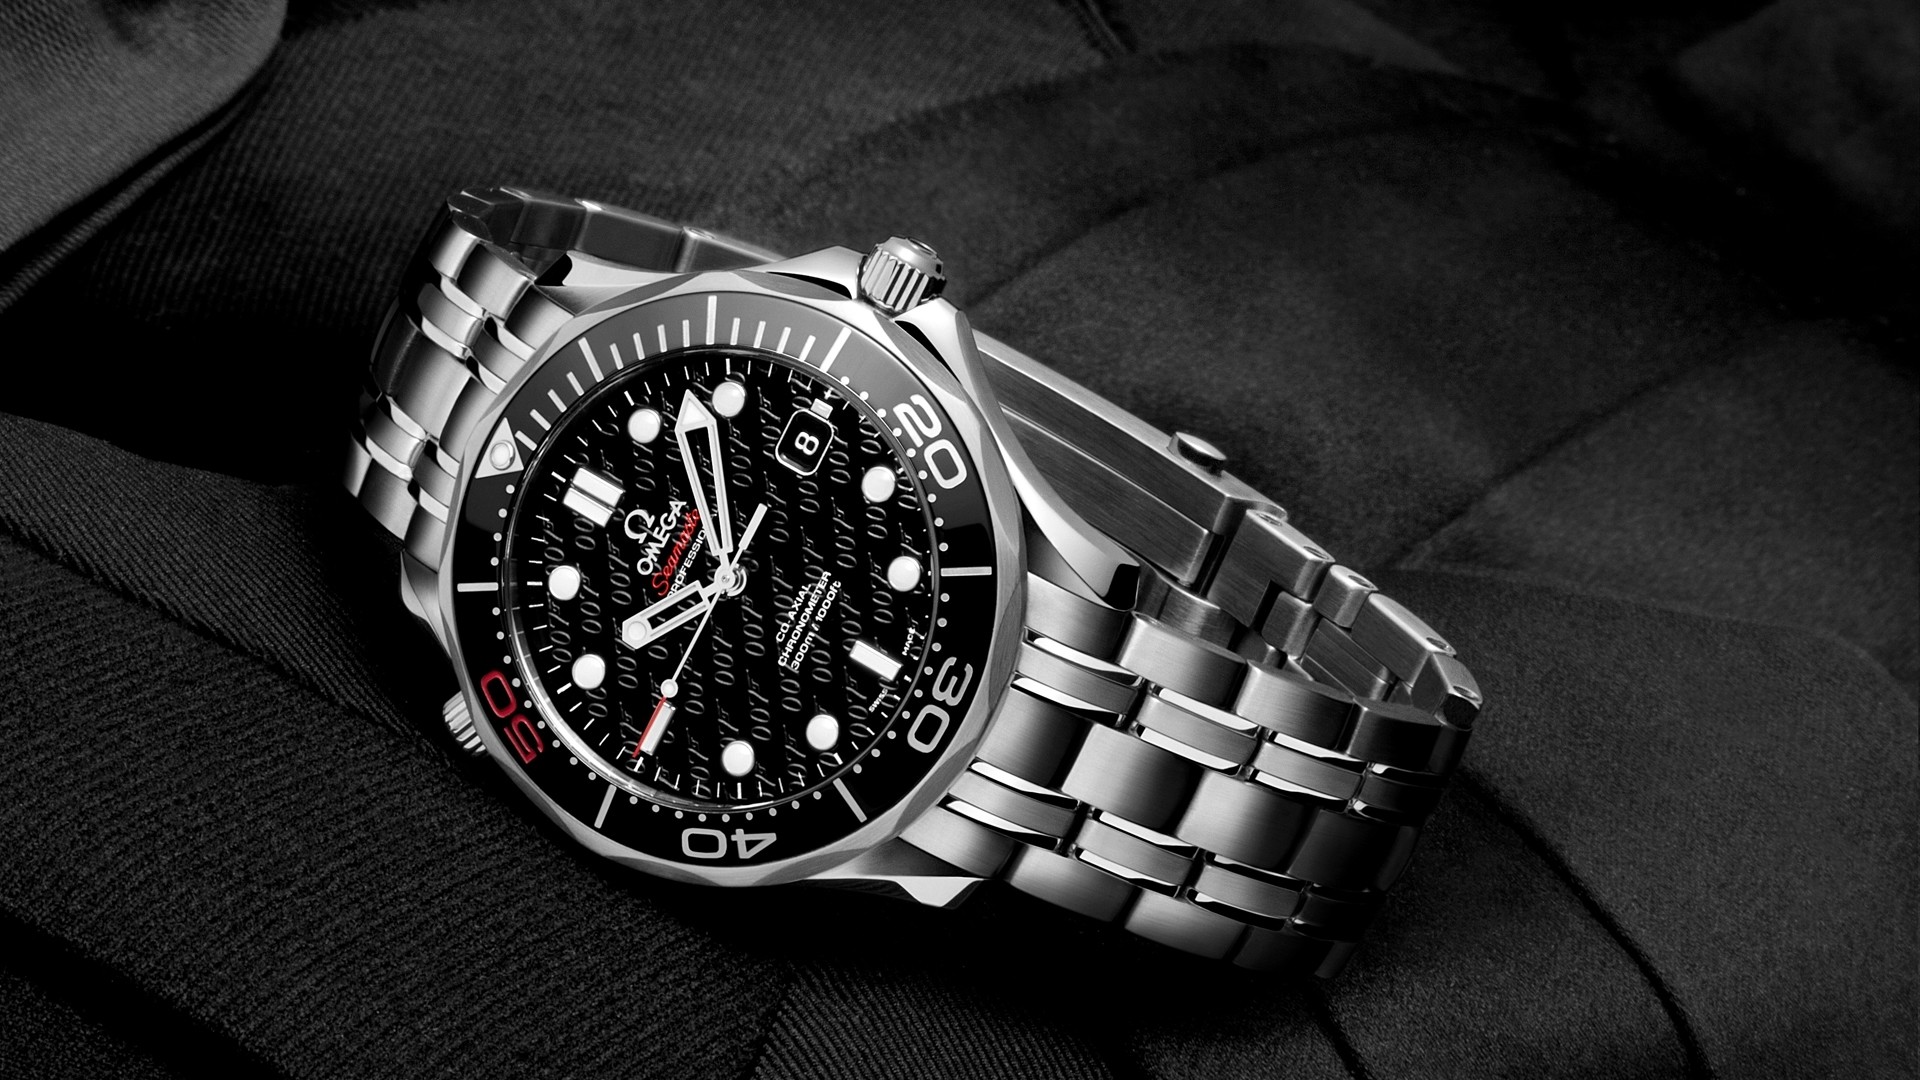 1920x1080 Hintergrundbilder omega seamaster james bond 007 Armbanduhr Uhr GroÃansicht  